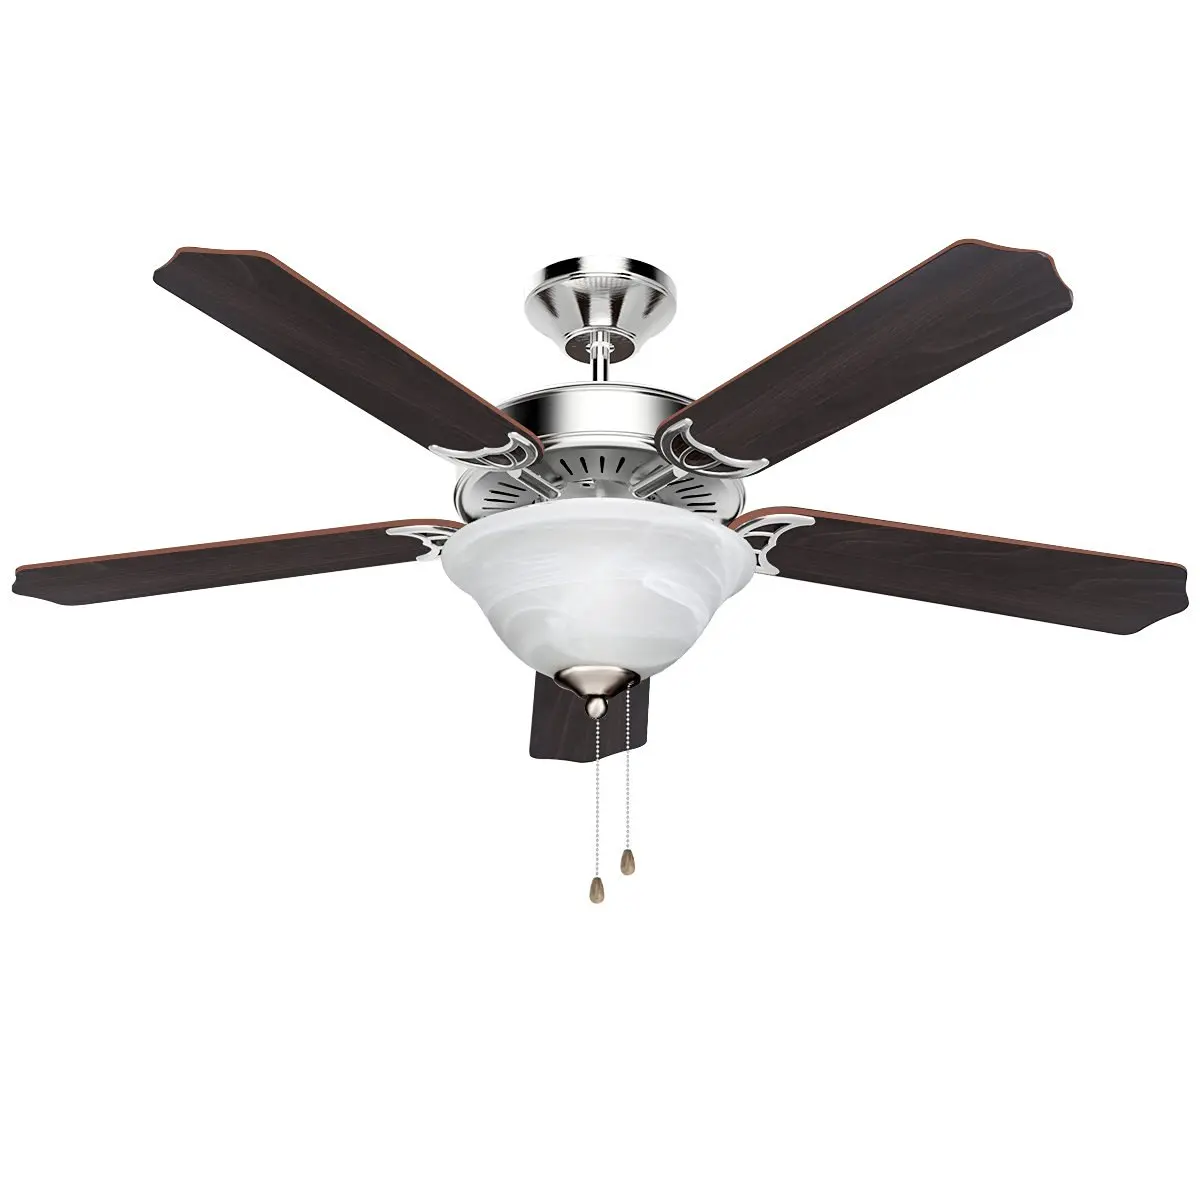 Buy Le 52 Inch Indoor Ceiling Fan Light Fixture 5 Wooden Brown